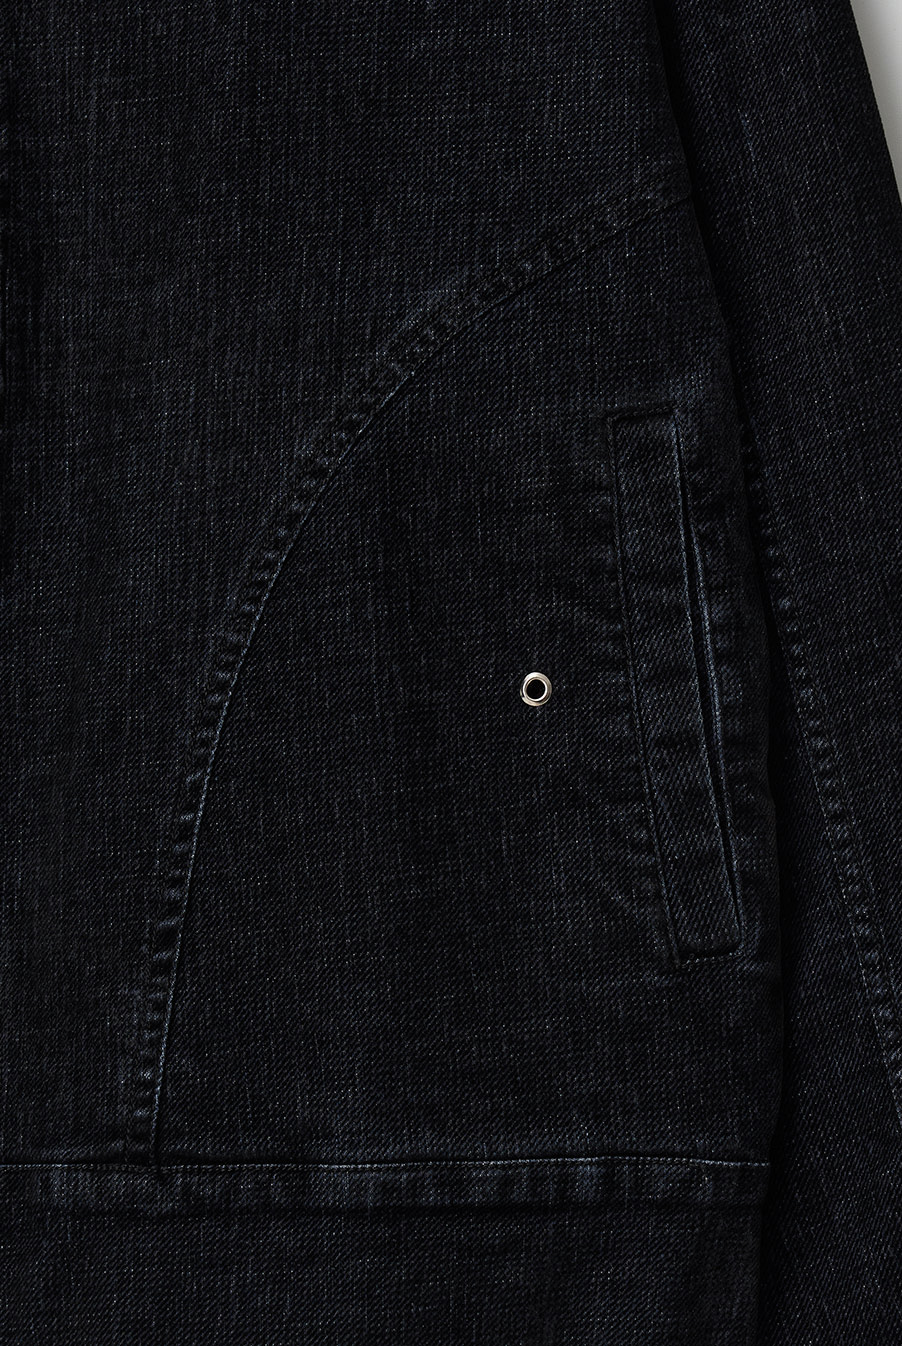 Bulky zipper denim Jacket - Velvet Black